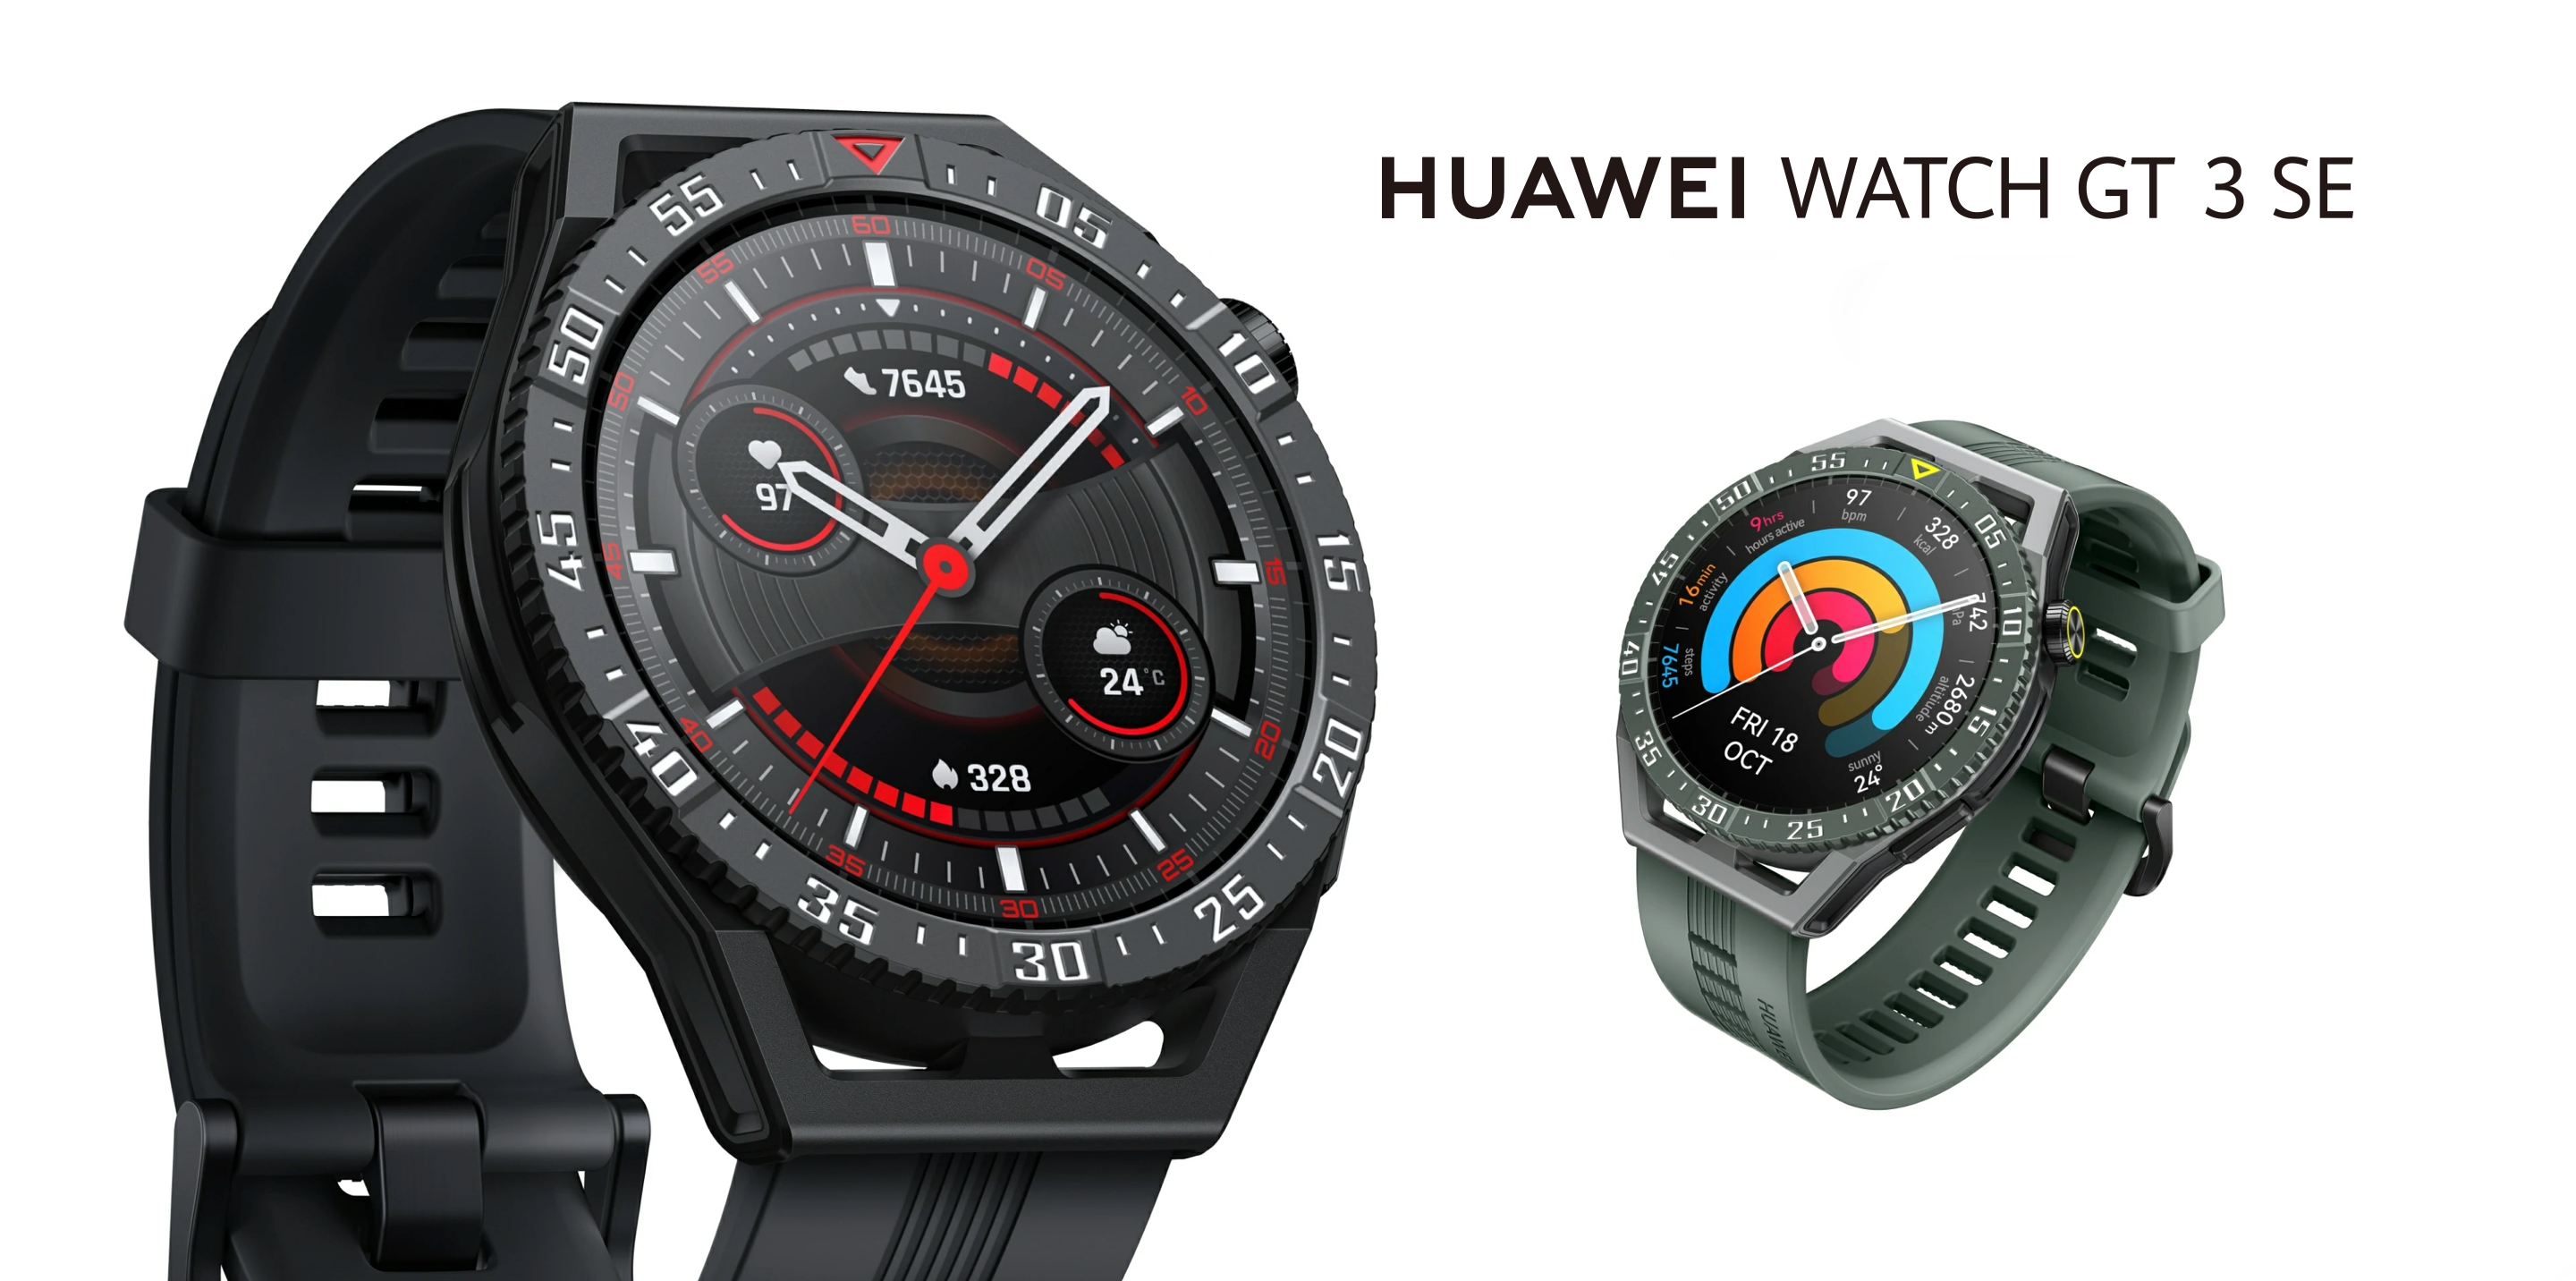 Huawei Watch GT 3 SE : une smartwatch destinée au marché mondial avec écran AMOLED, protection contre l'eau, capteur SpO2 et autonomie de 14 jours.